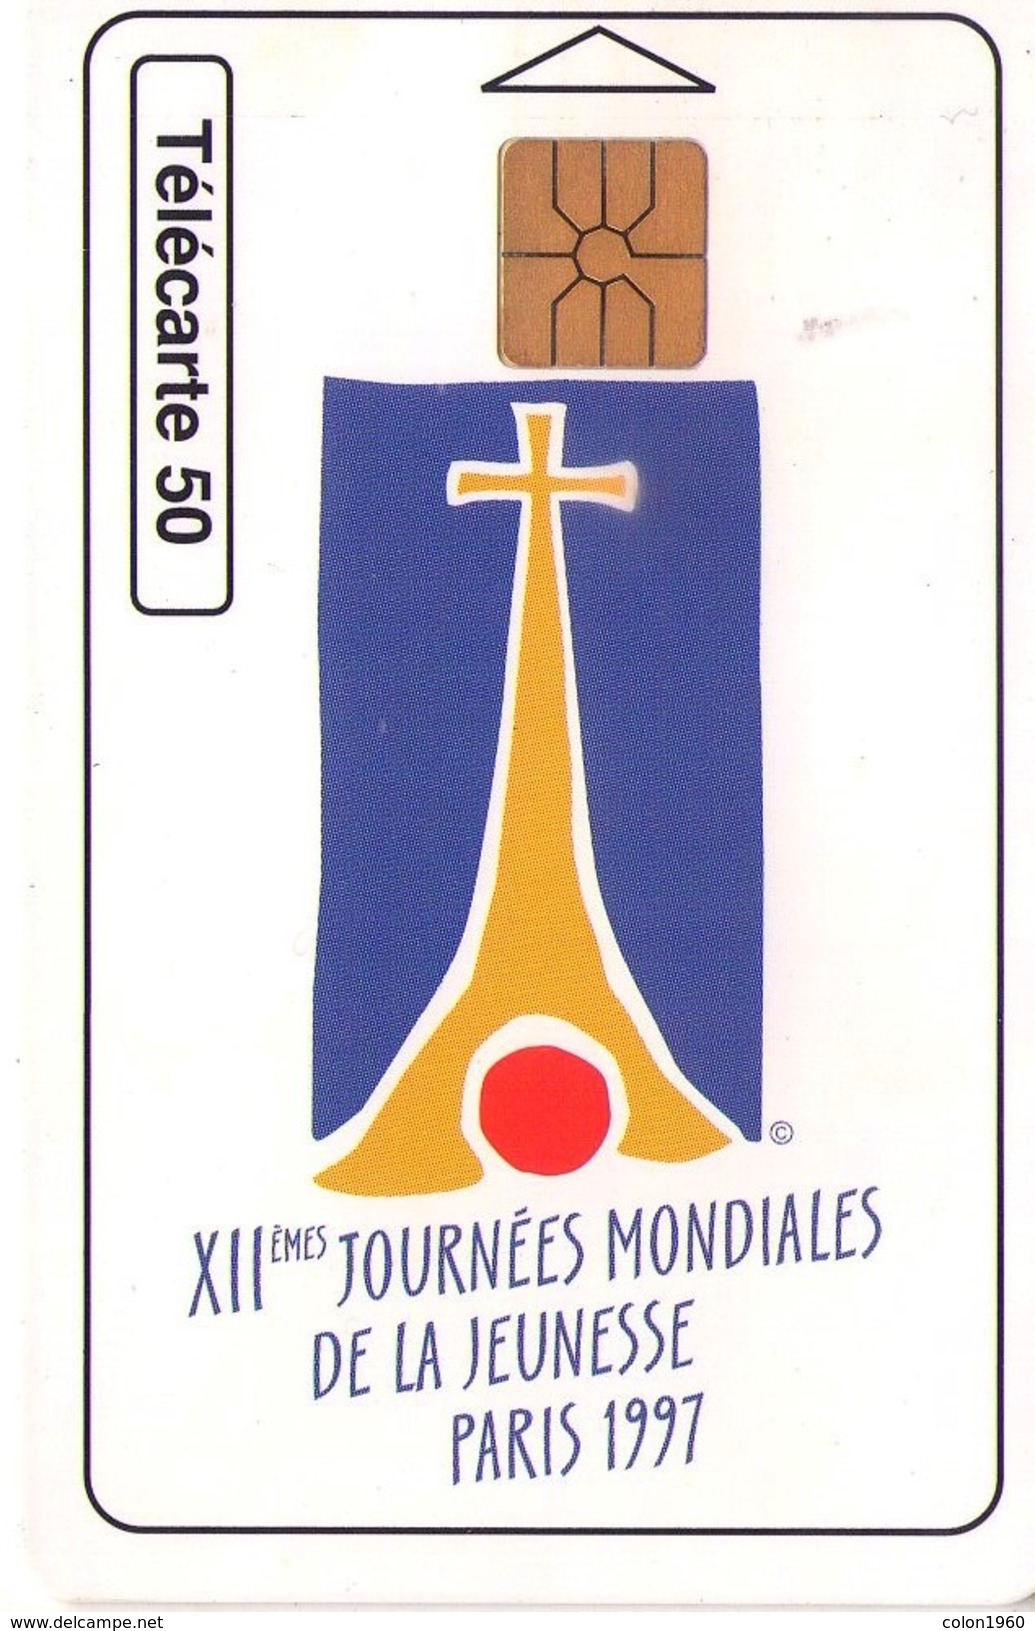 MONACO. XIIe Journées Mondiales De La Jeunesse - Paris 1997. 1997-06. MCO-58 (001). (037) - Monaco